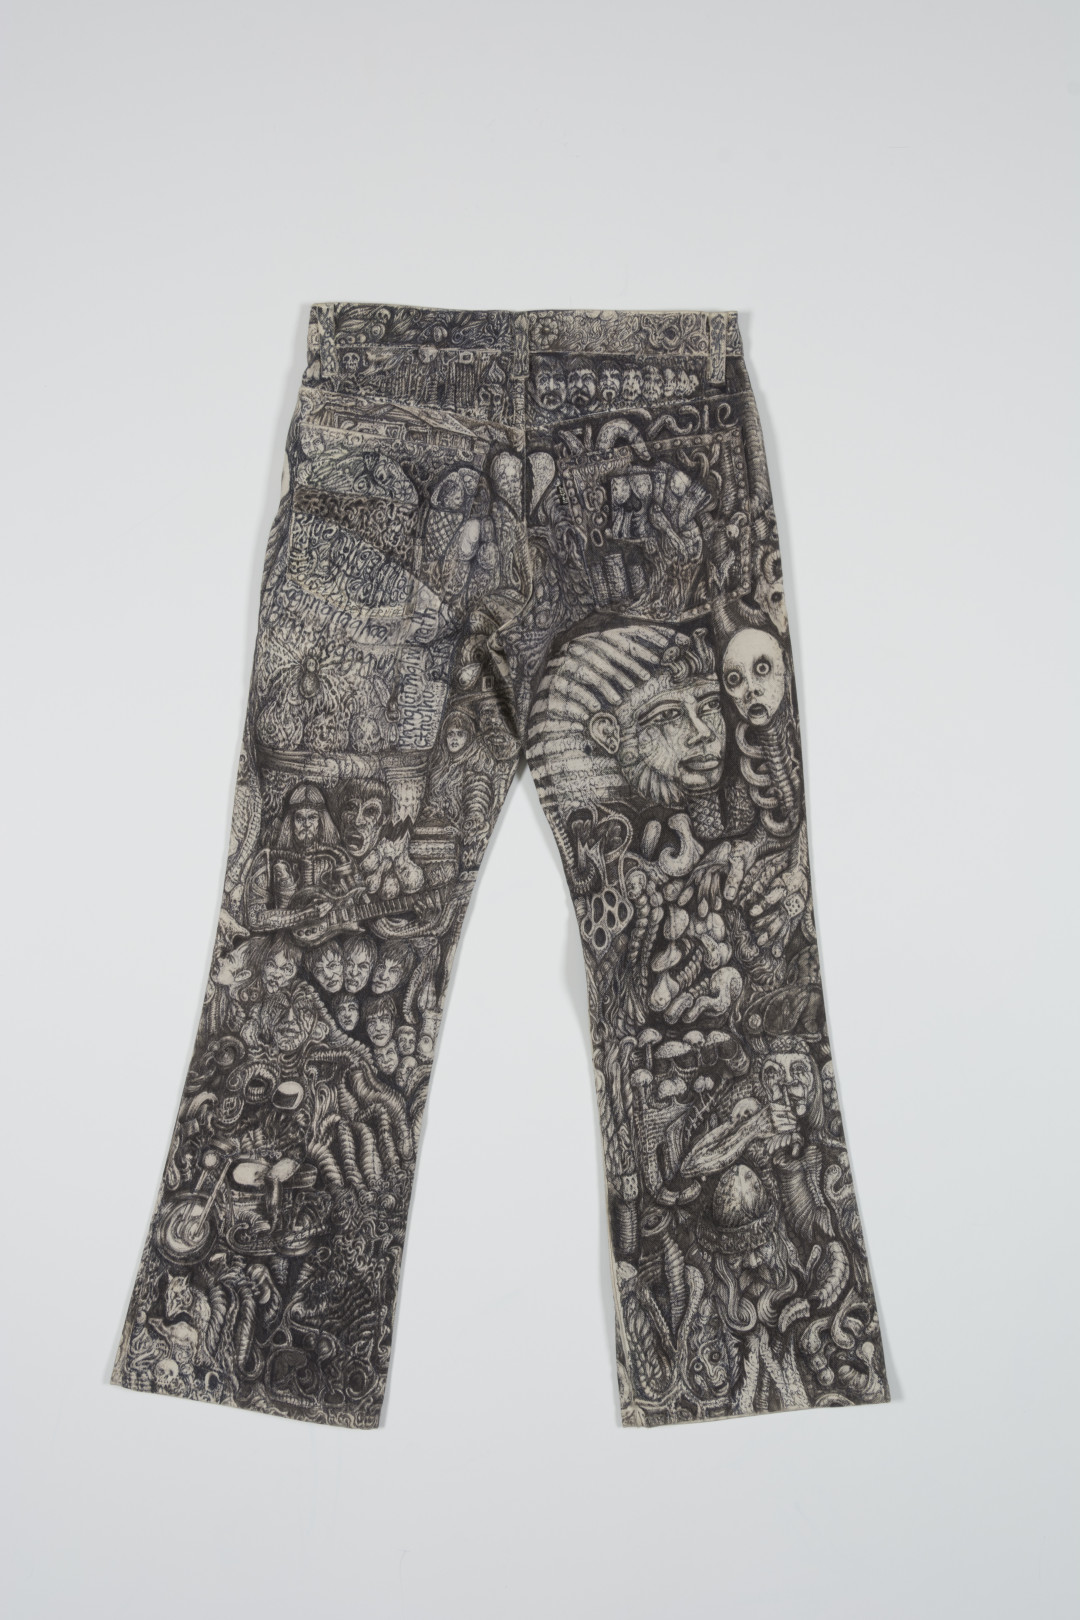 Prison Pants, 1979